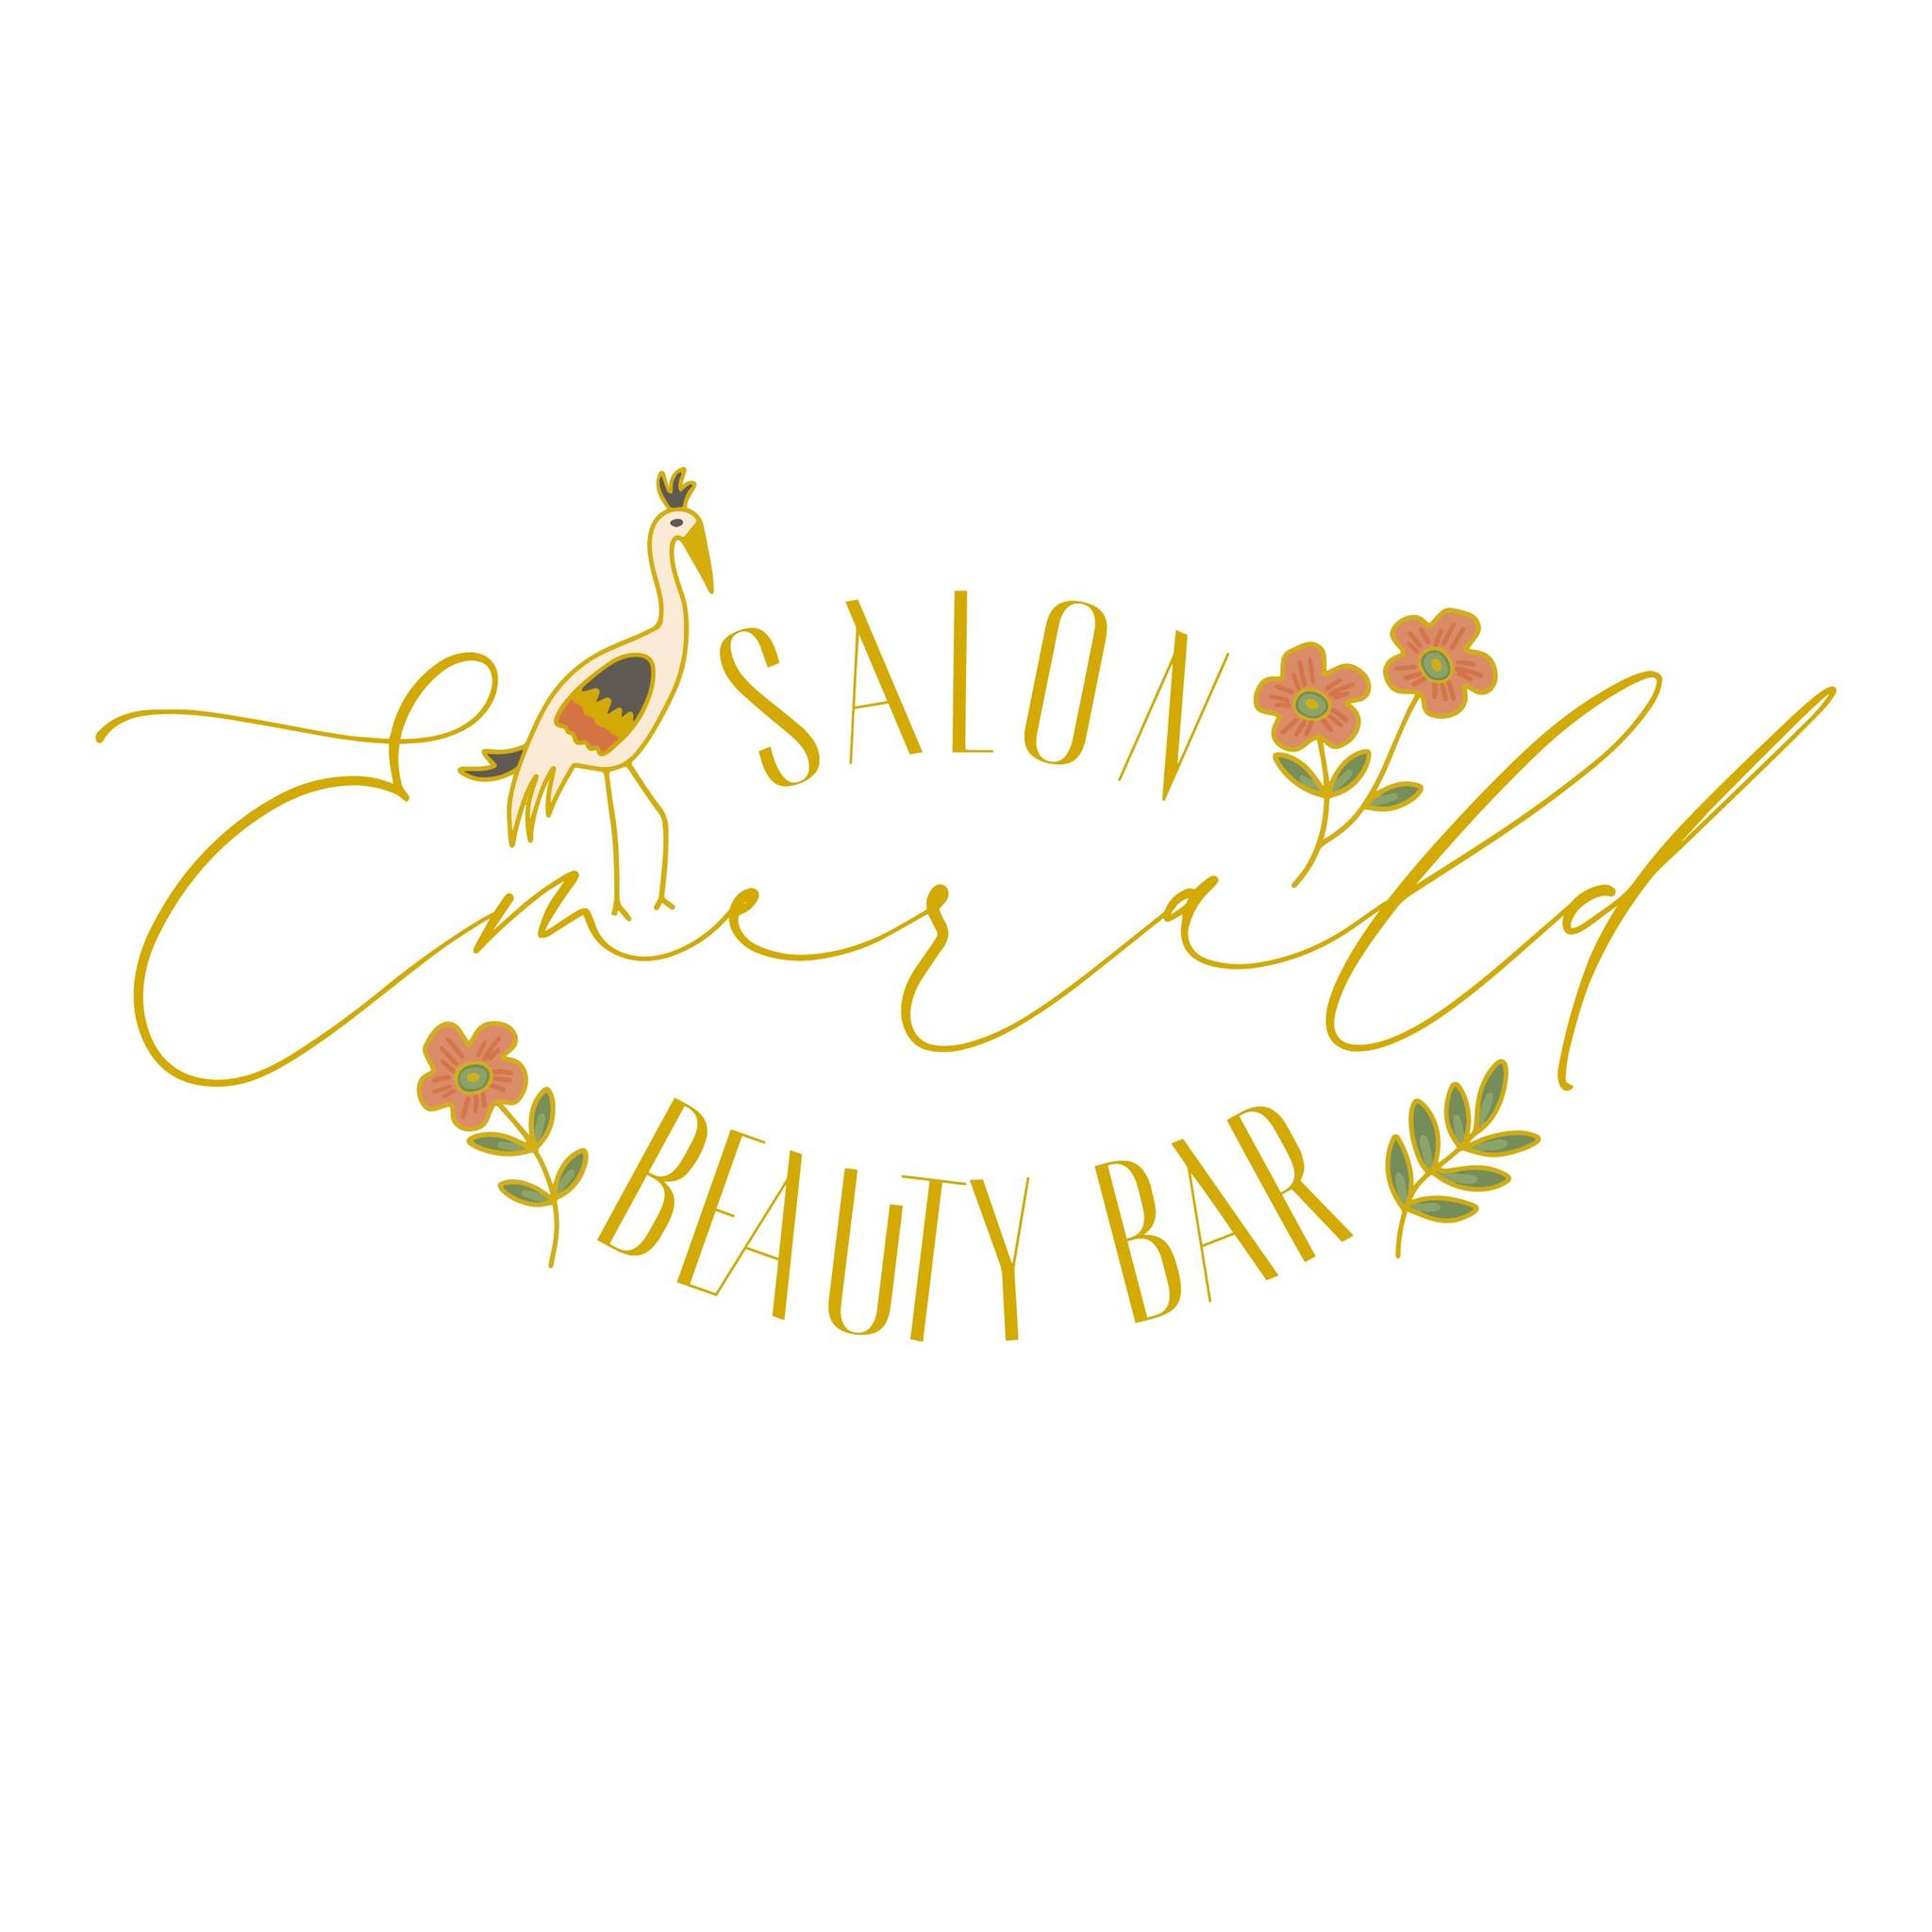 Emerald Salon & Beauty Bar